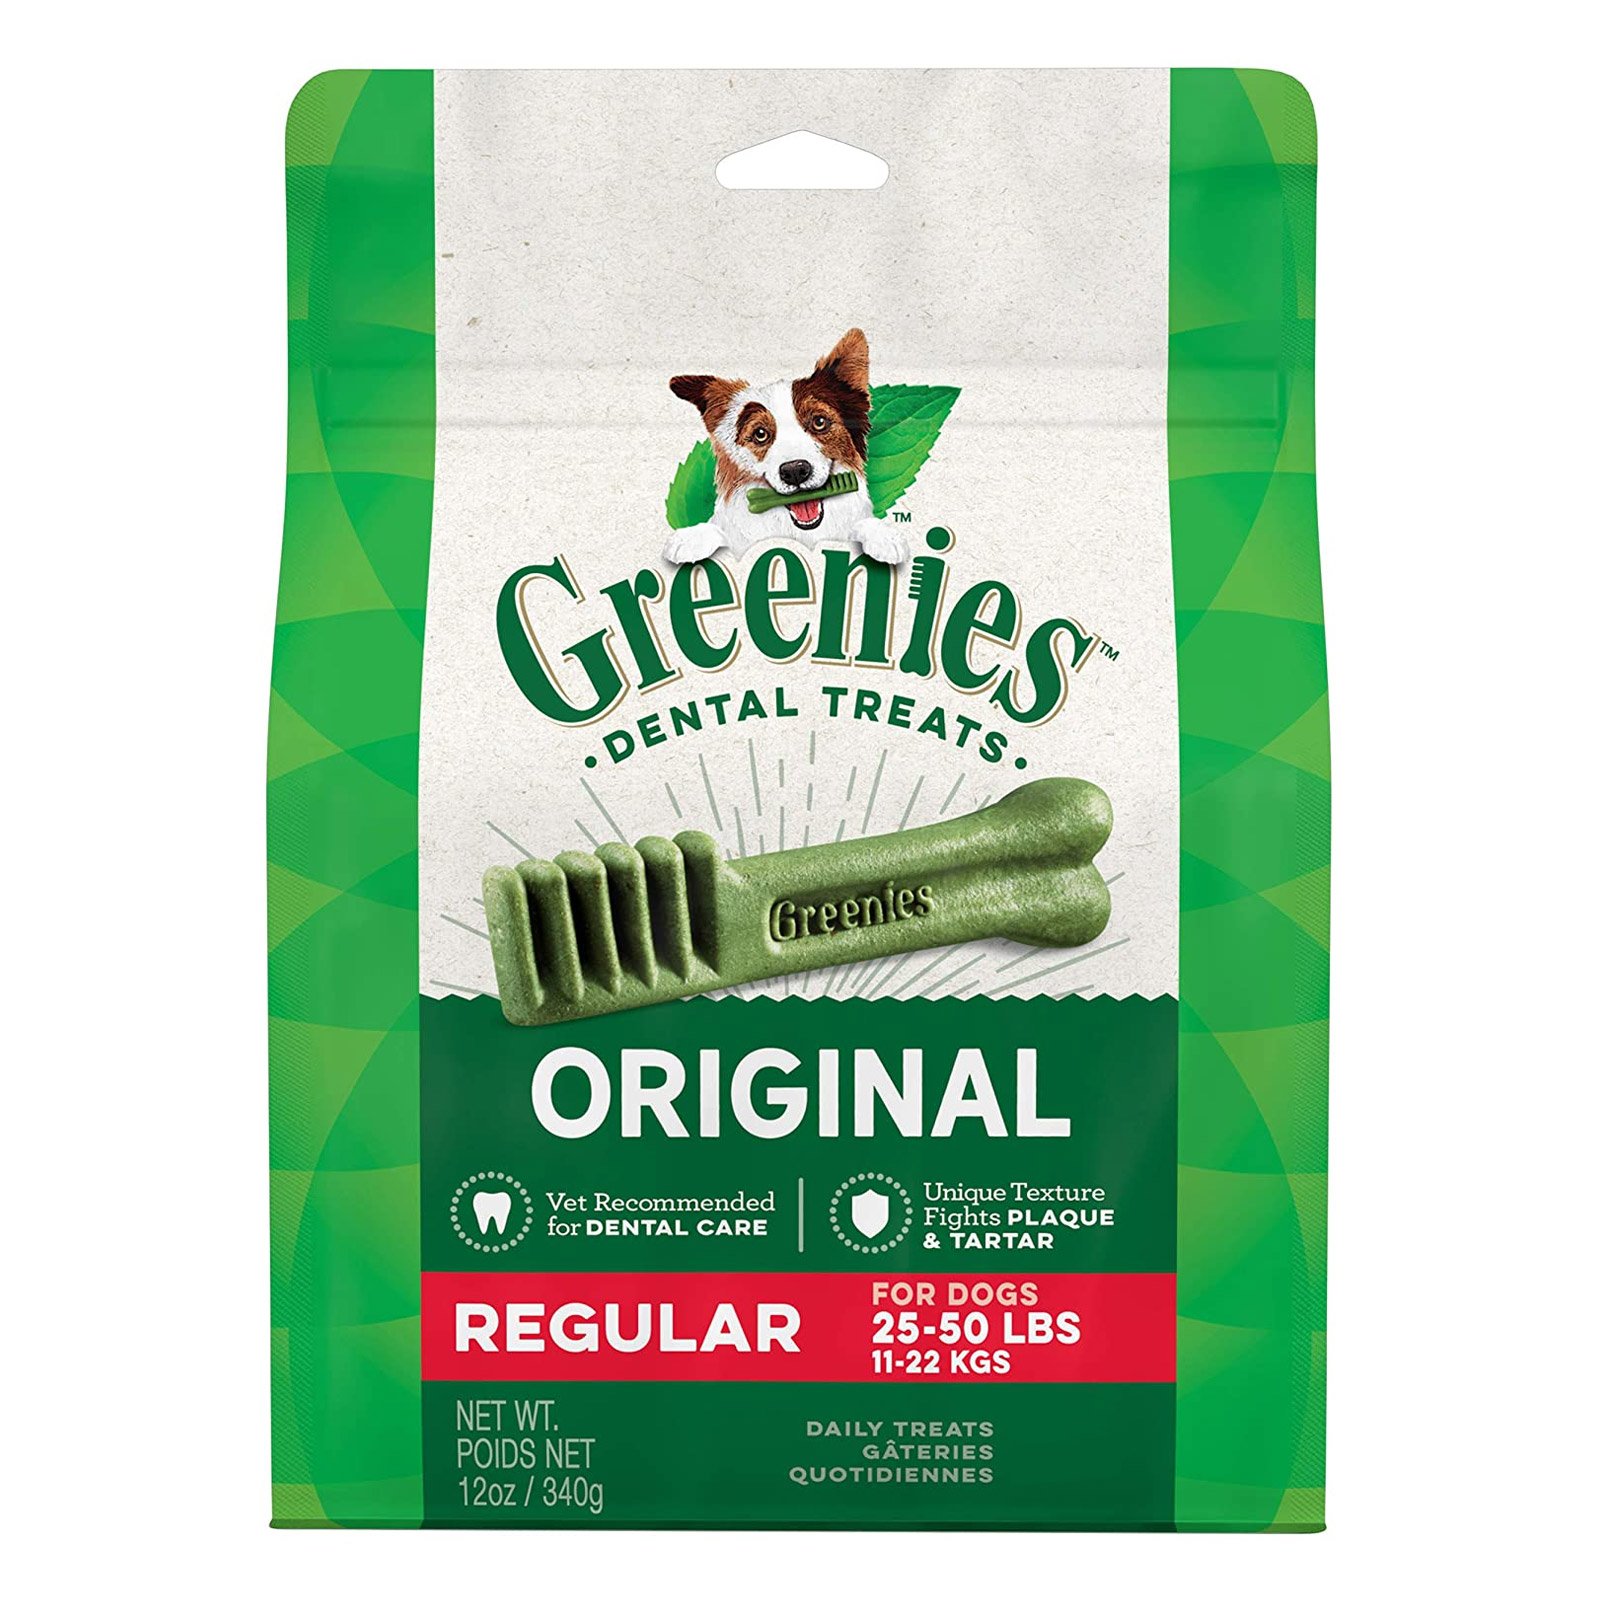 Greenies Original Dental Treats Regular For Dogs 11-22 Kg